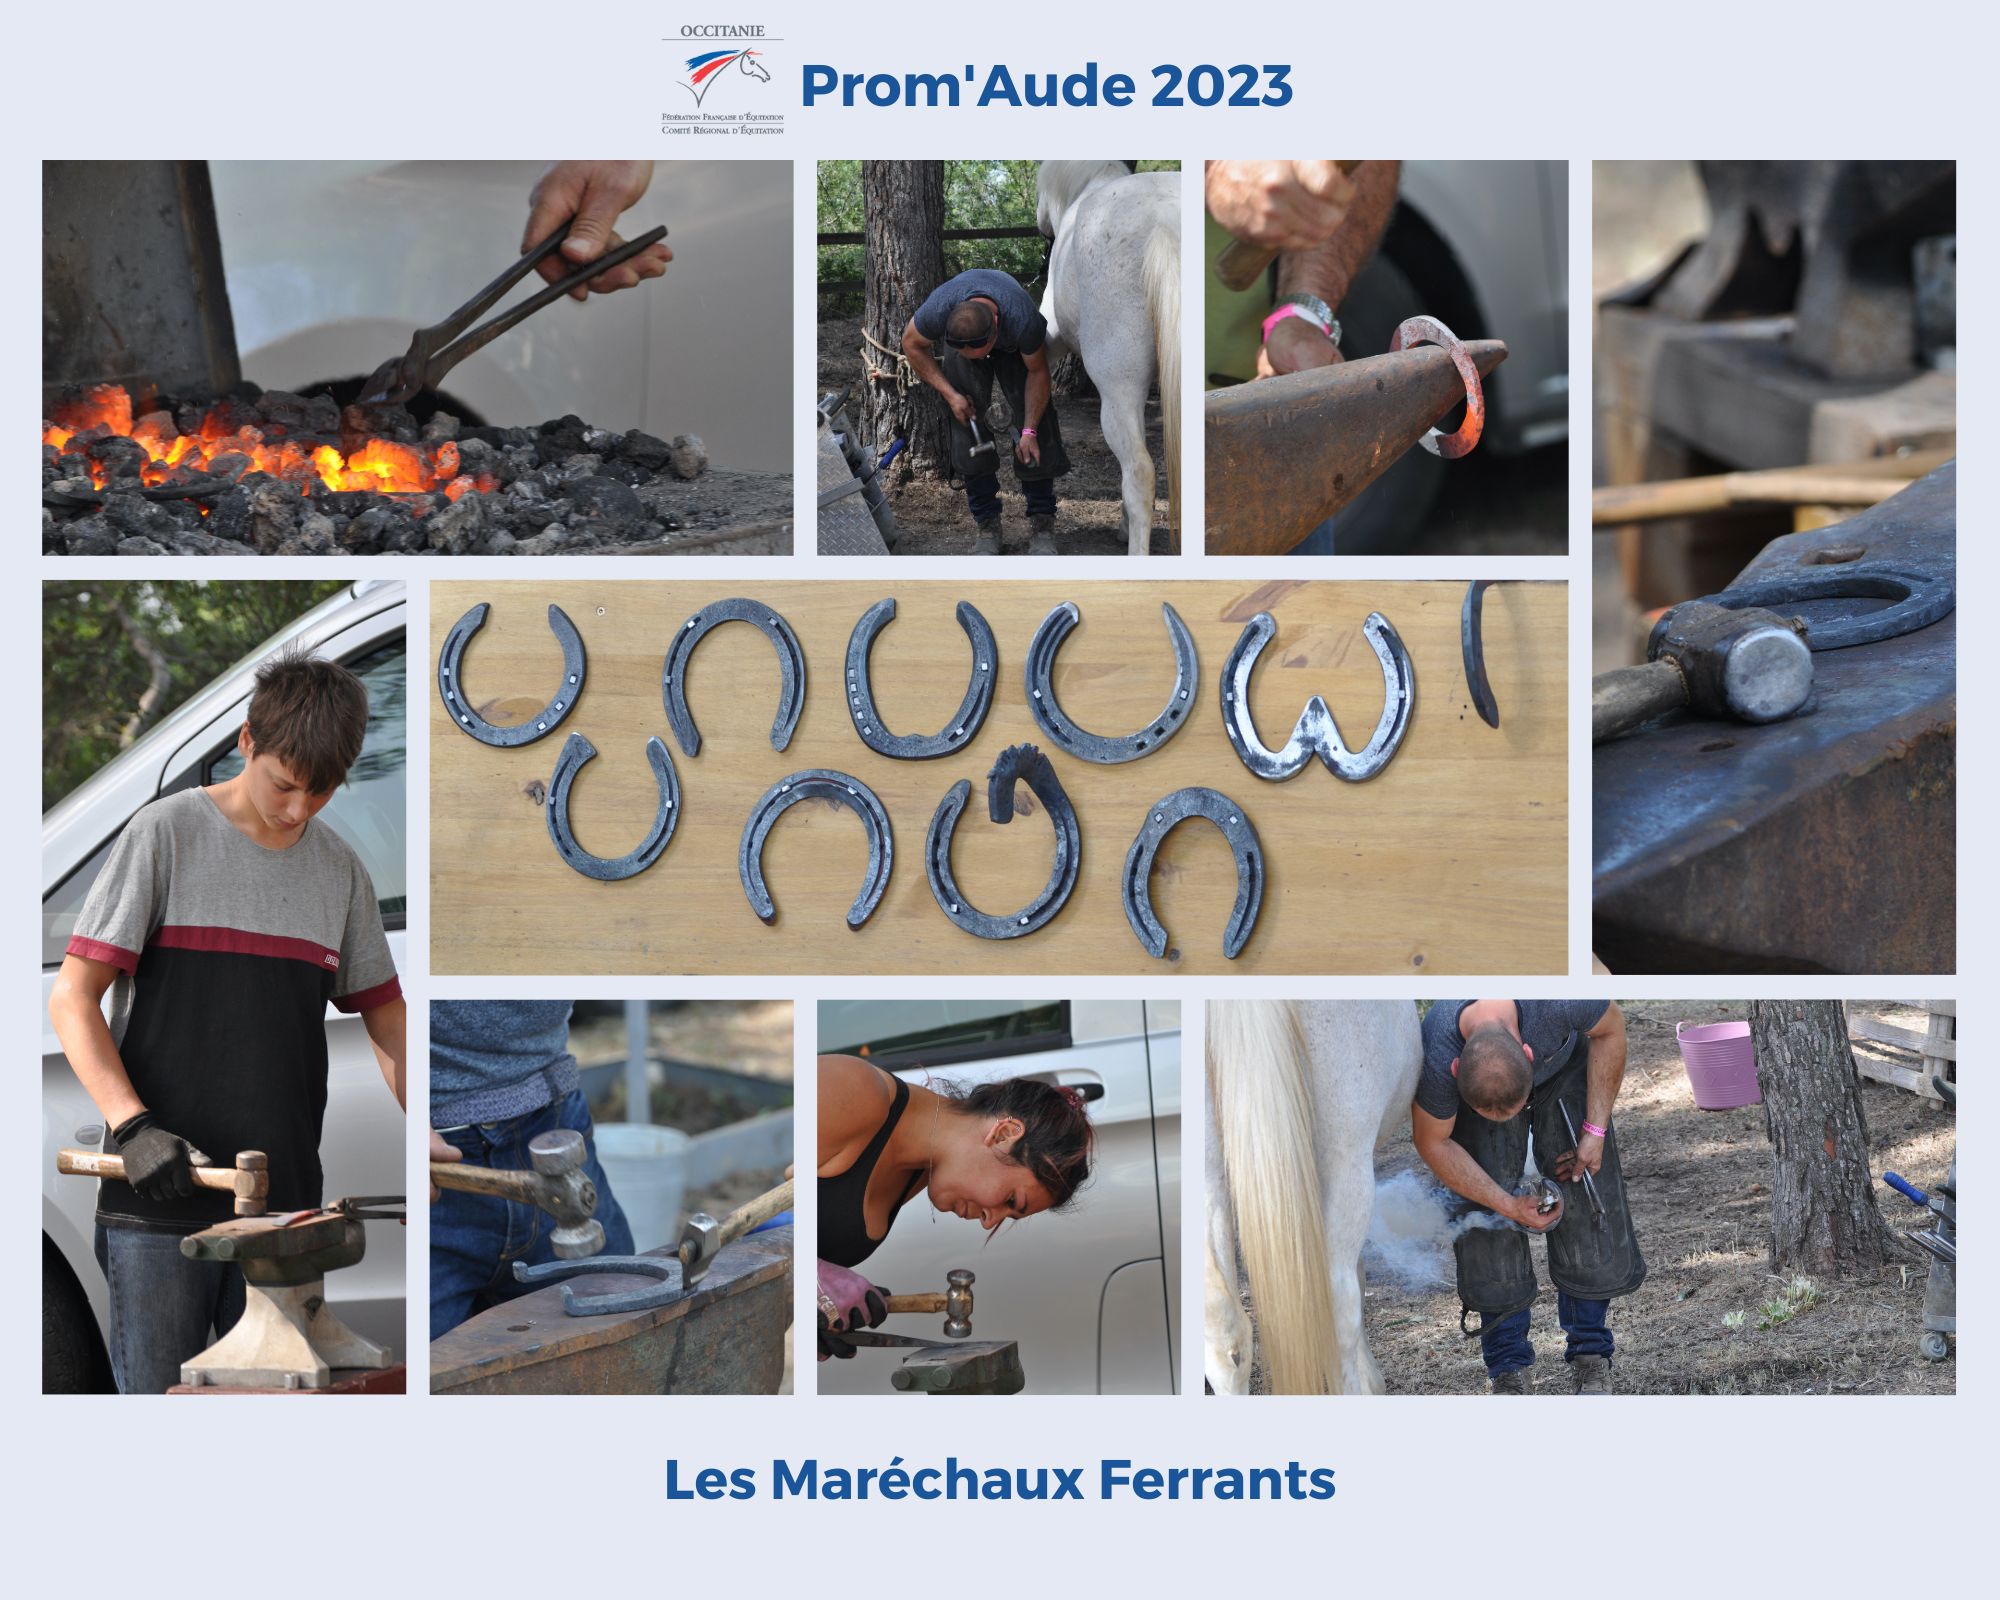 Photos Maréchaux Ferrants Prom'Aude 2023